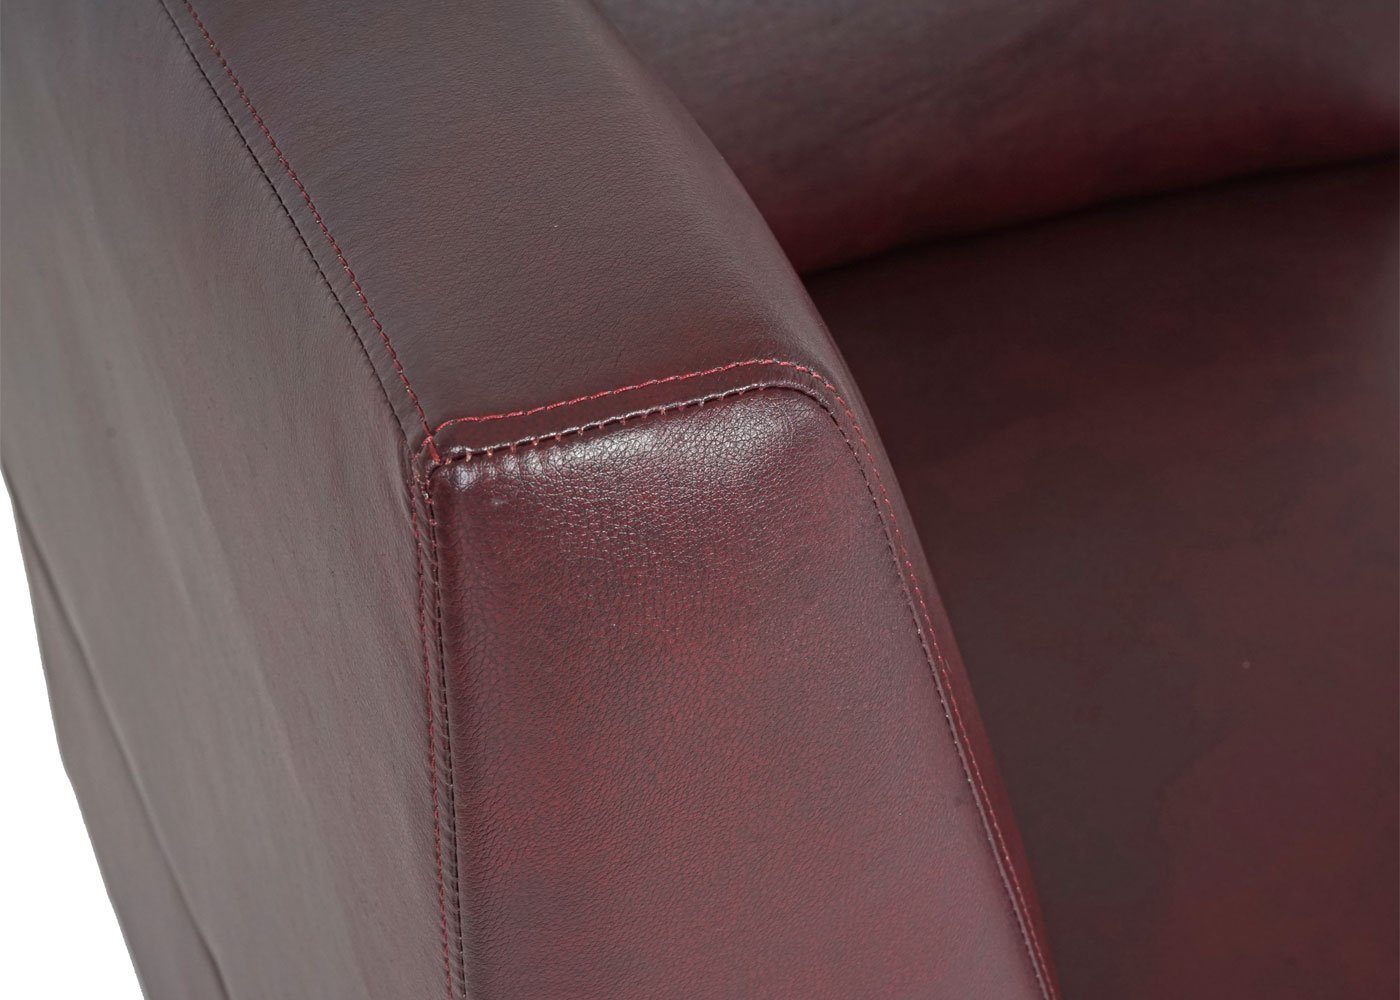 Erweiterbar rot-braun MCW mit Polsterung, Lyon-Serie 4-Sitzer Set, rot-braun weiteren der Elementen Moncalieri-4, bequeme |